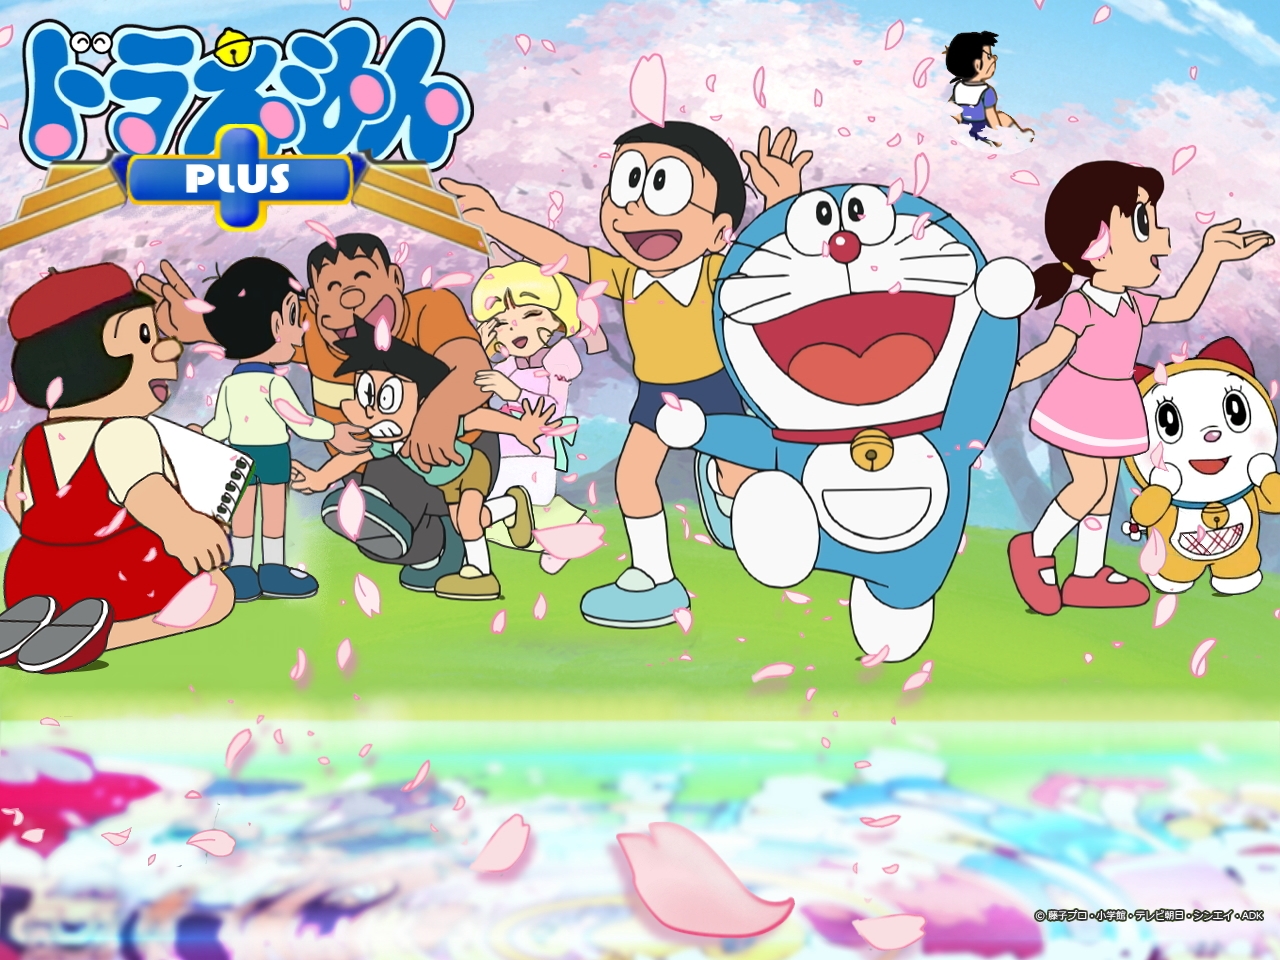 Doraemon Wallpaper: Hình nền với chủ đề Doraemon là sự lựa chọn tuyệt vời cho những ai yêu thích nhân vật hoạt hình này. Hãy đến và xem những hình ảnh đẹp nhất để làm hình nền cho thiết bị của bạn nào!